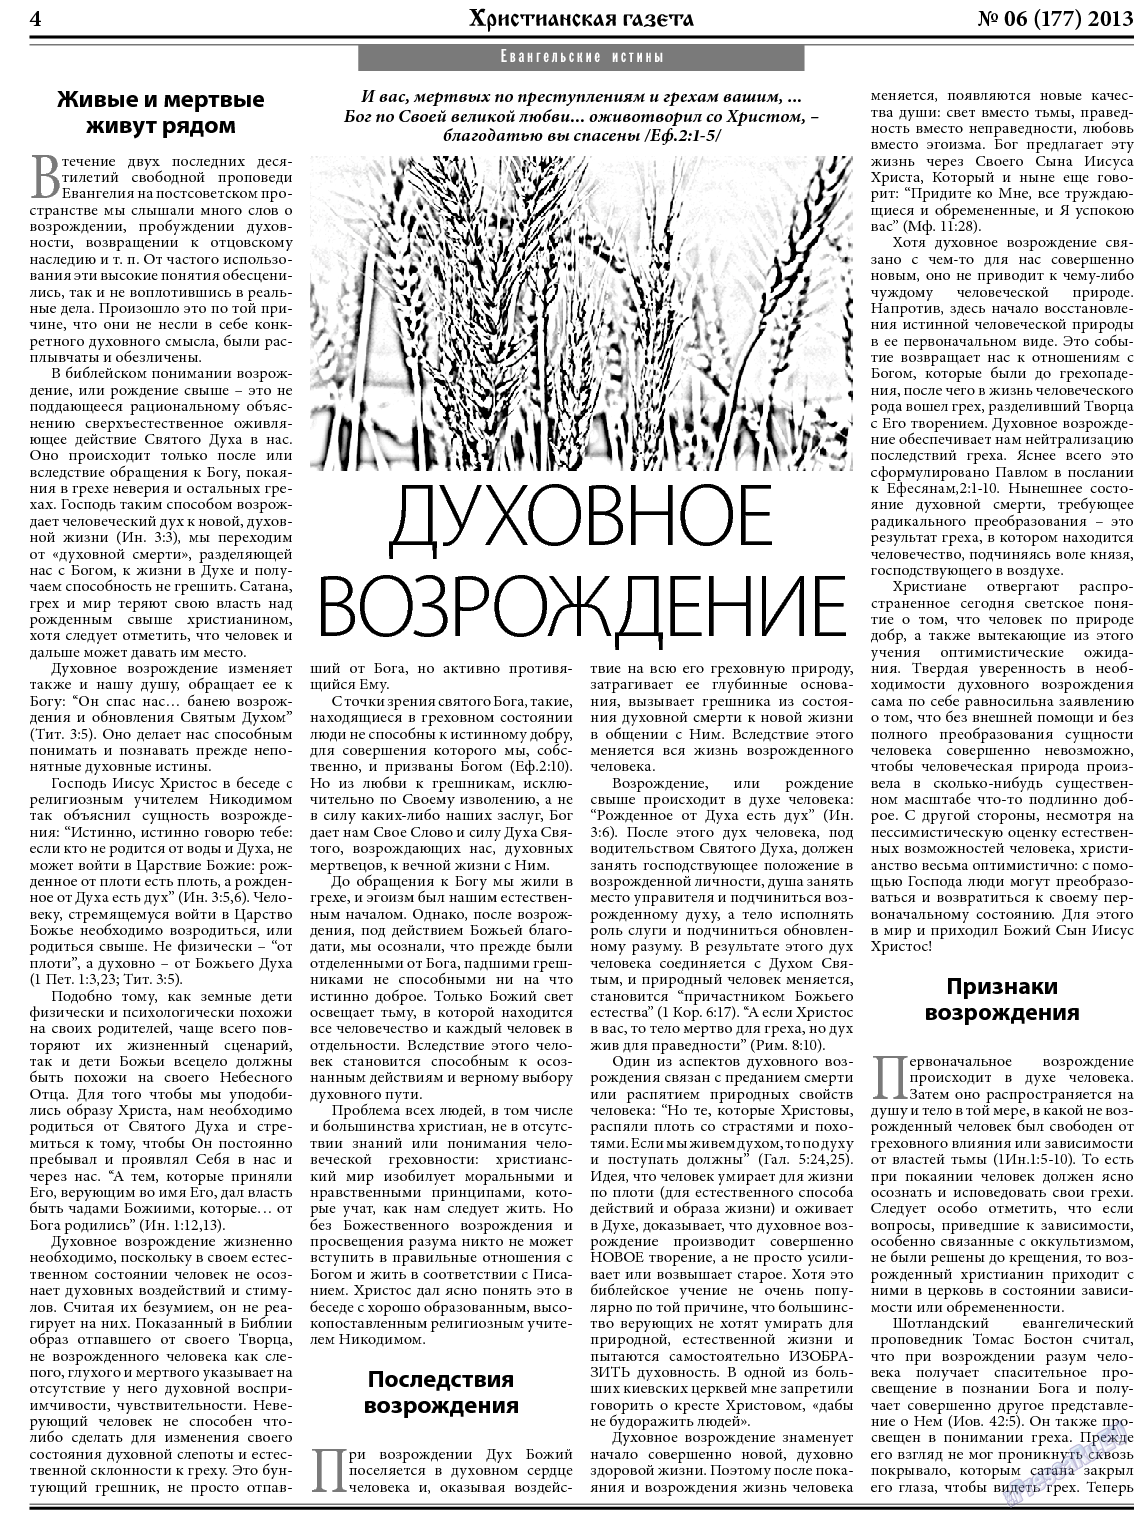 Христианская газета, газета. 2013 №6 стр.4